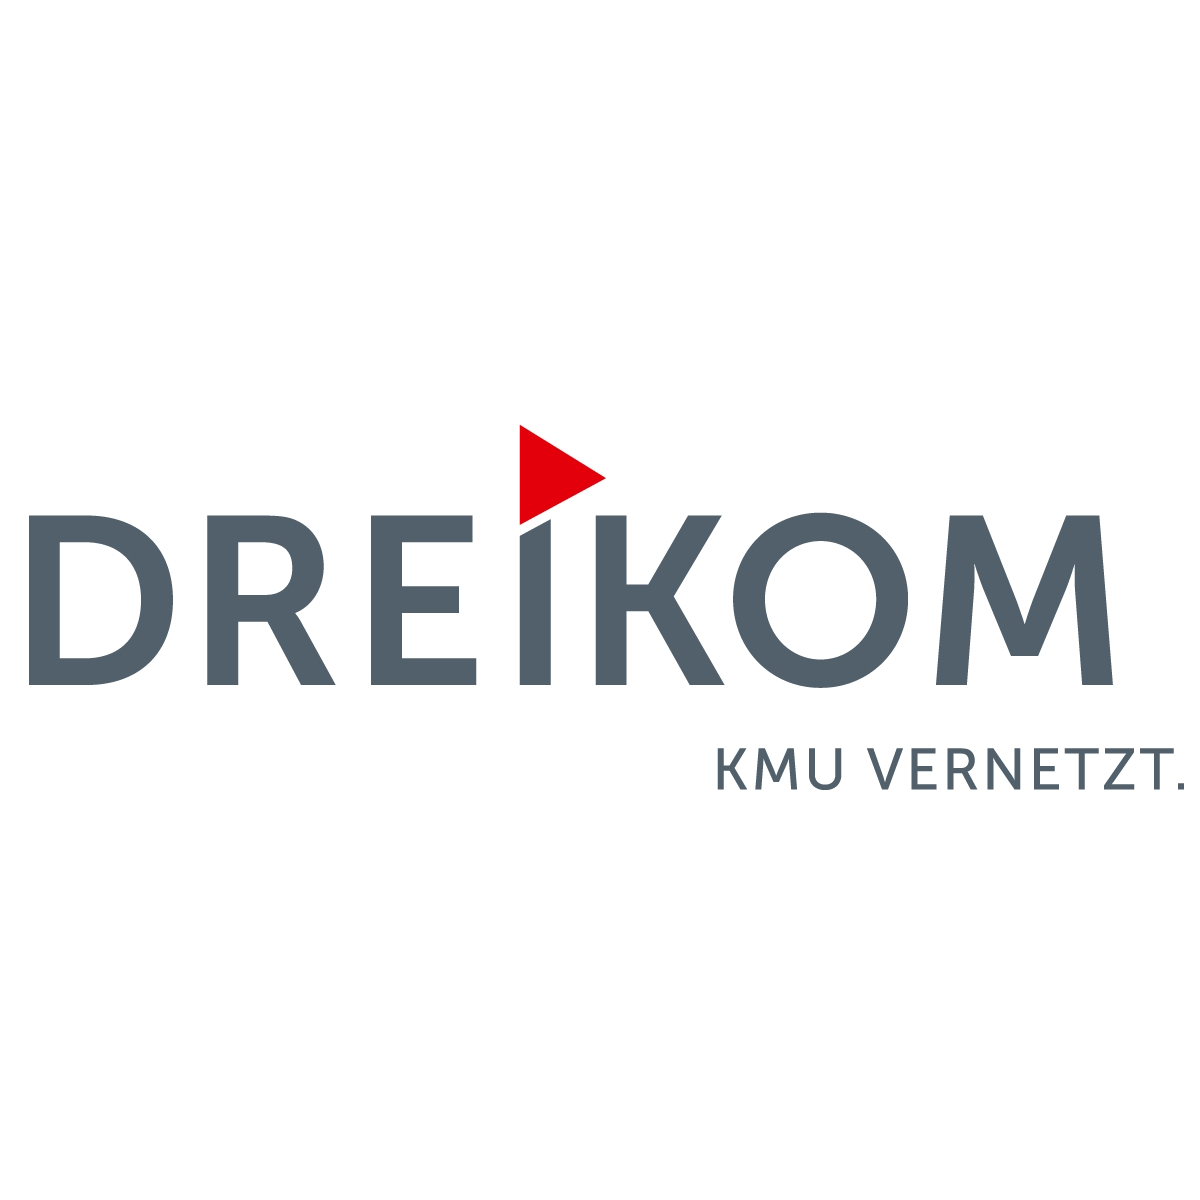 Dreikom - Partner von Elektro Beyeler GmbH in Aristau Althäusern im Freiamt Kanton Aargau